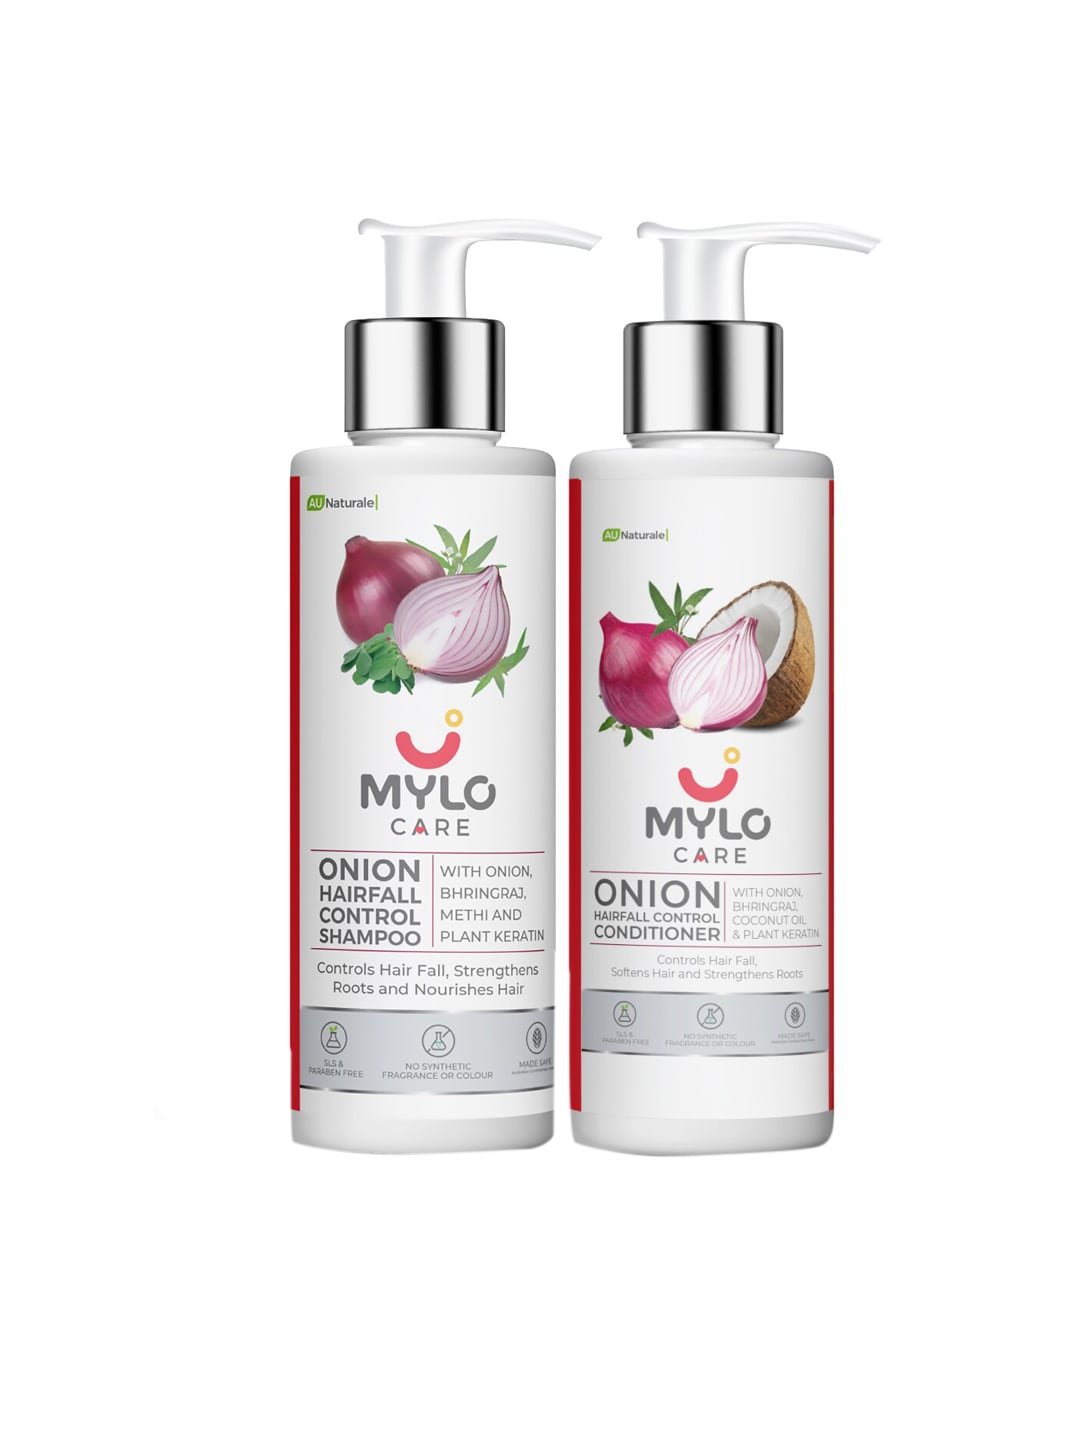 MYLO CARE Onion Shampoo & Conditioner - 200ml Each Price in India